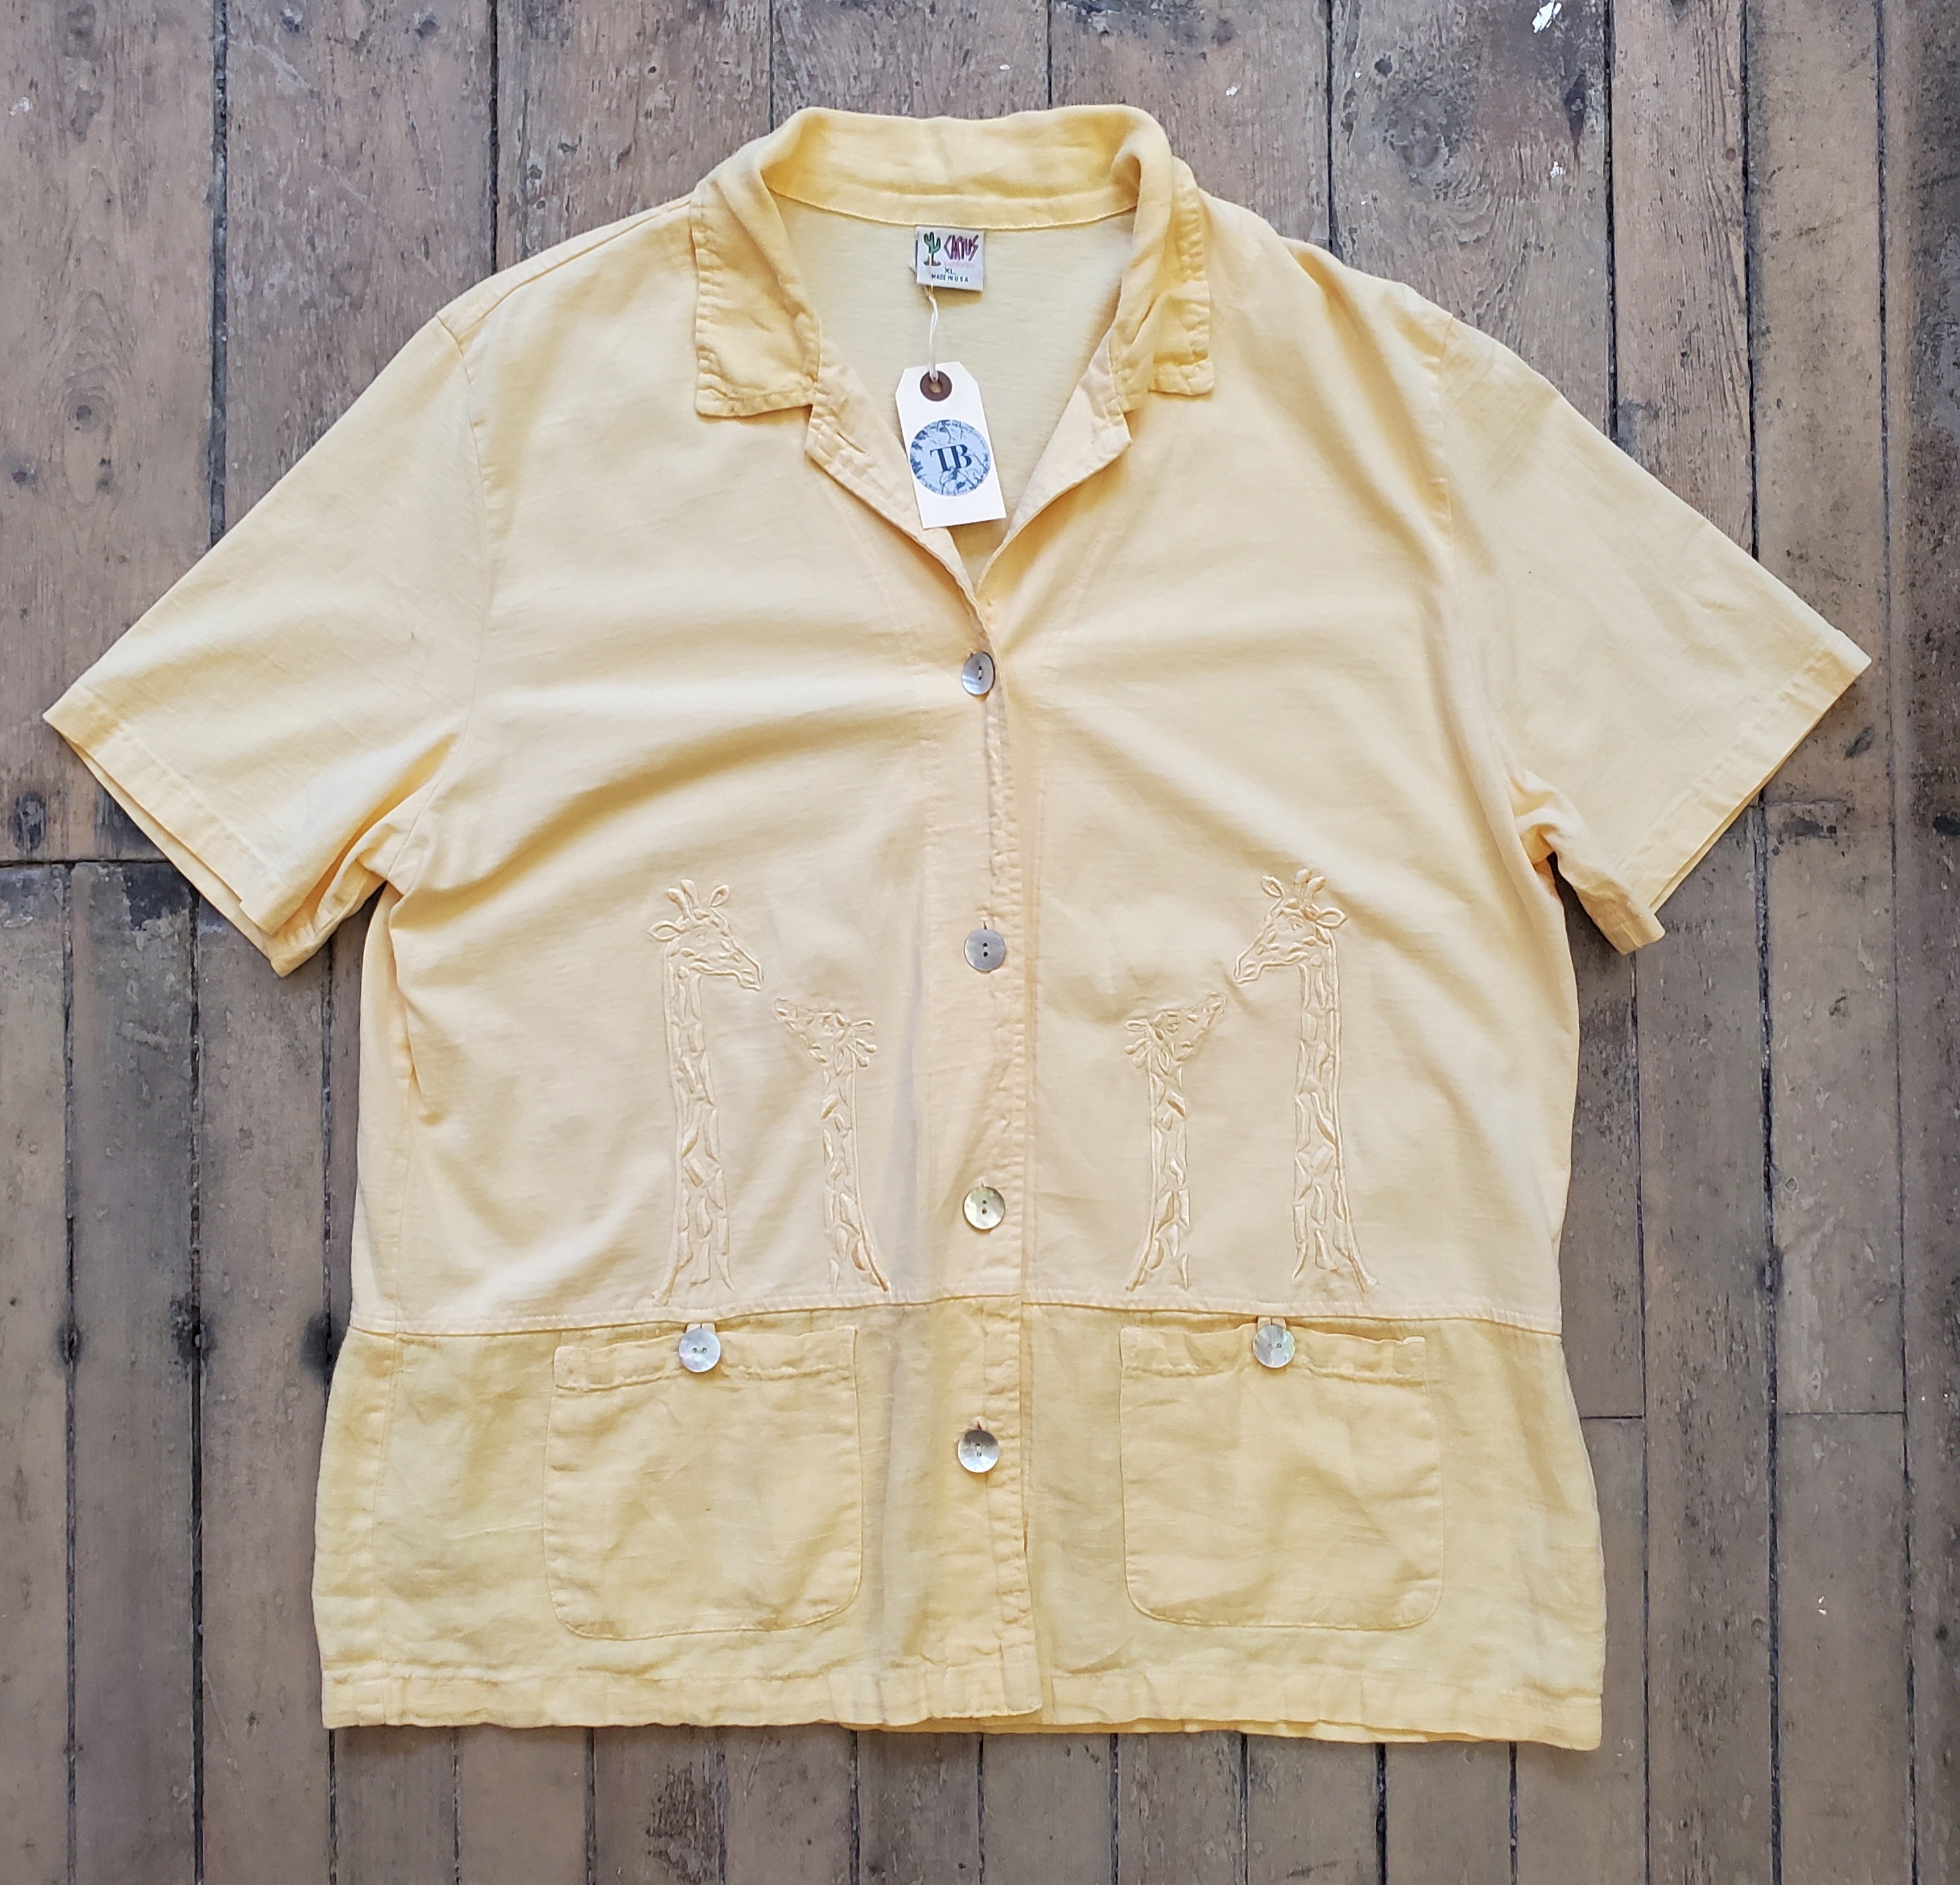 1990’s Giraffe Themed Shirt